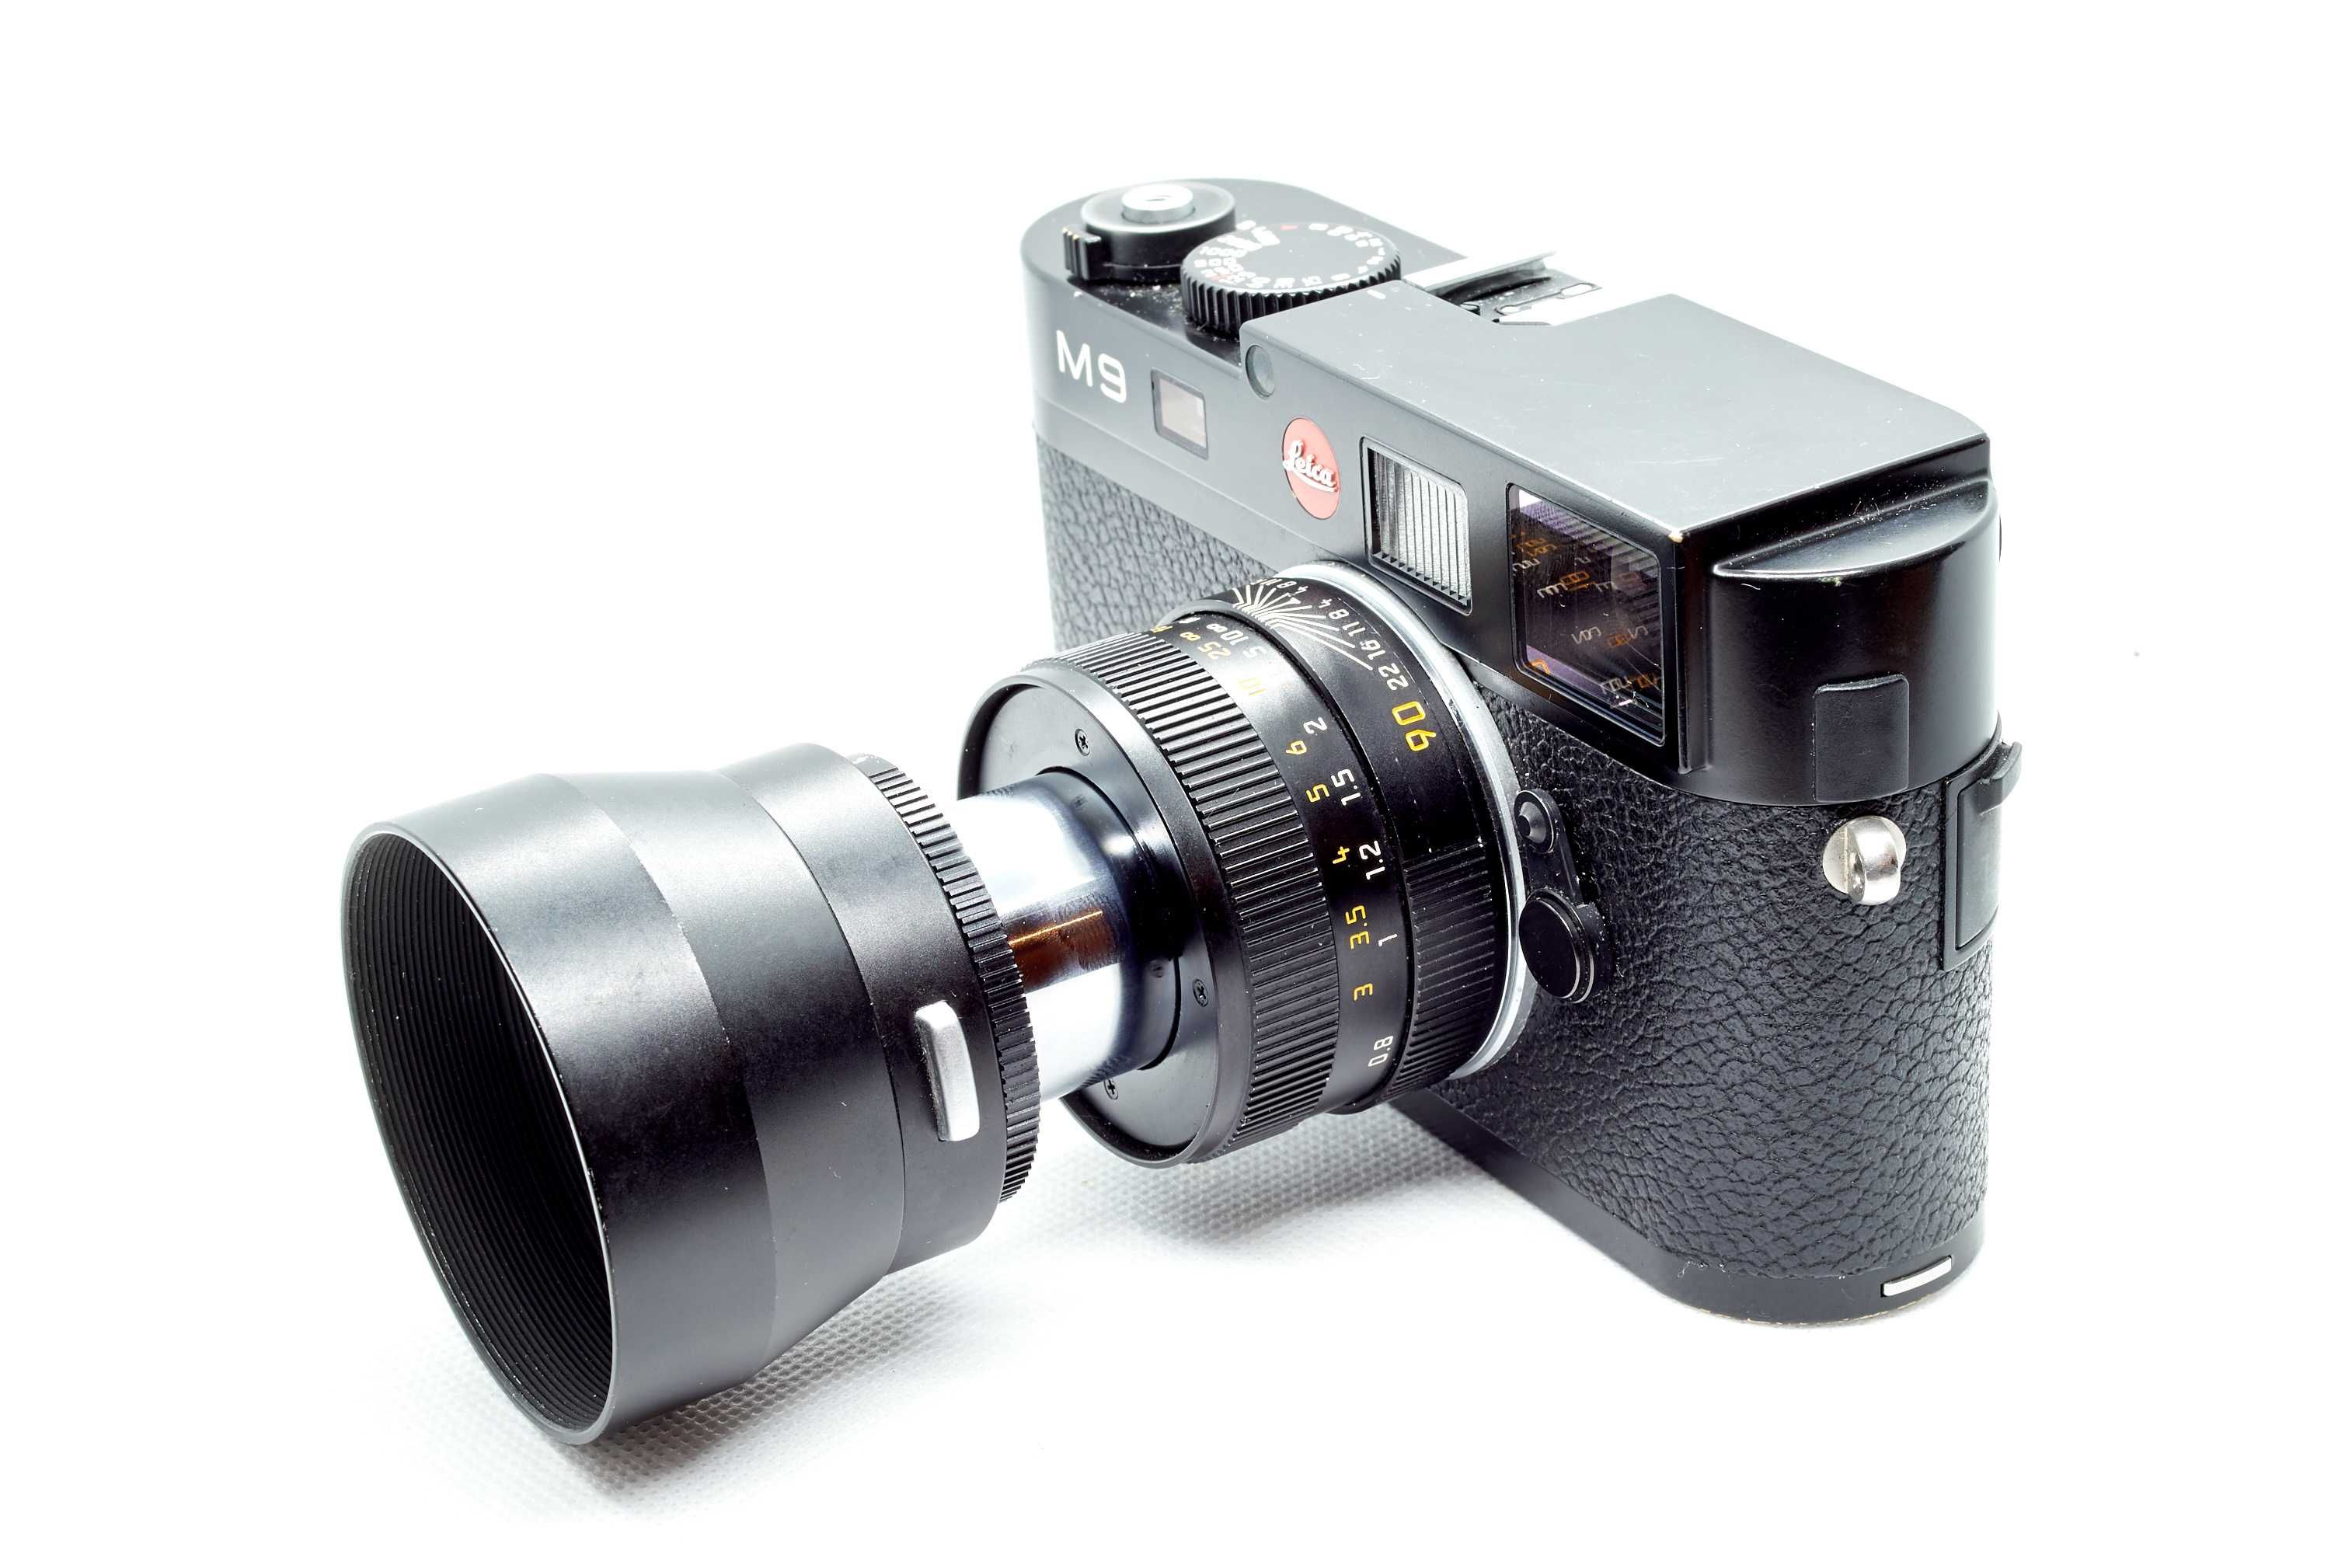 Leica M9, Leica Tri-Elmar-M 1:4 16mm 18mm 21mm ASPH + Leica Macro 90mm